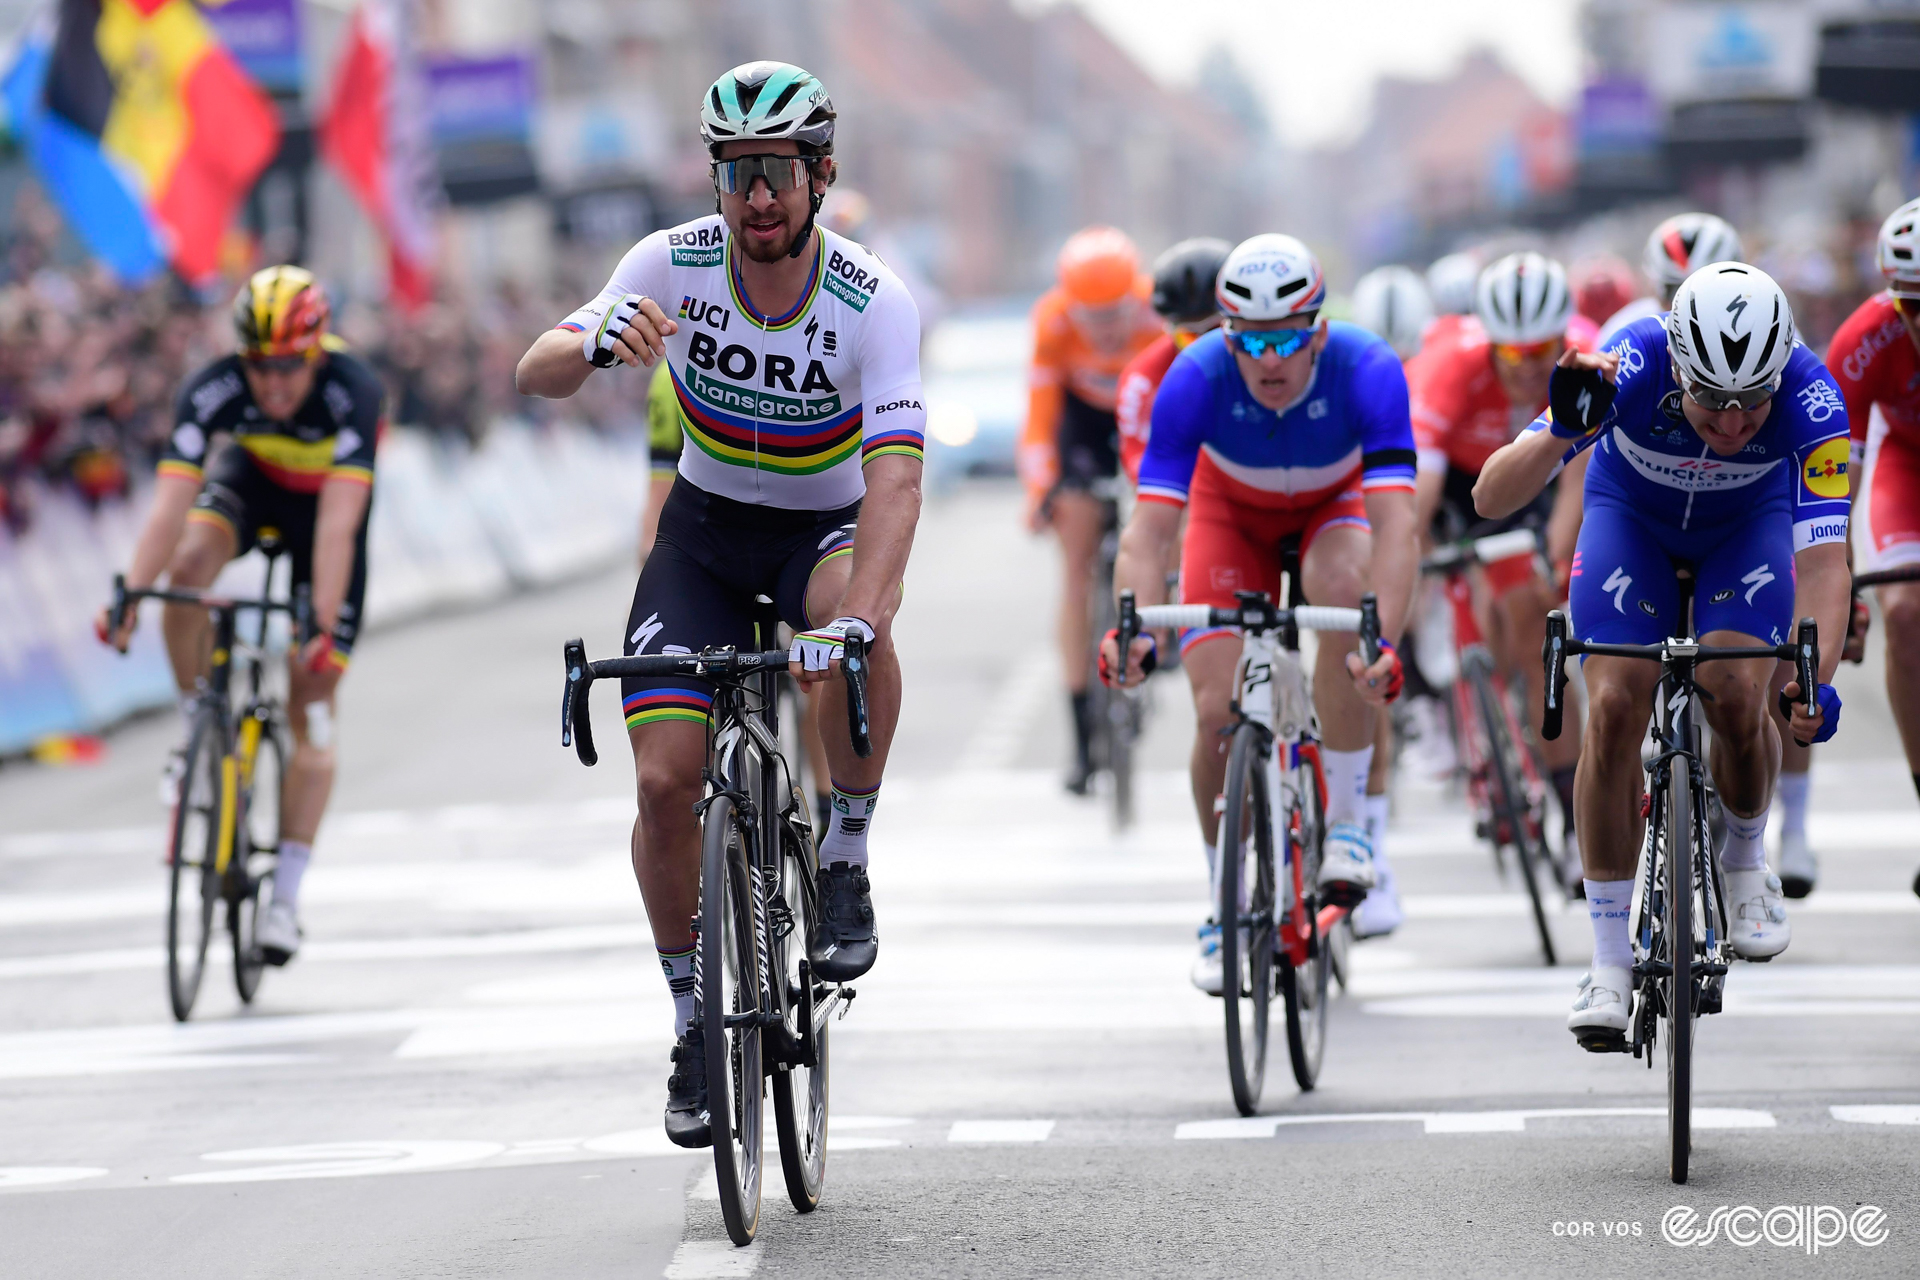 Peter Sagan celebrates winning the 2018 Gent-Wevelgem.